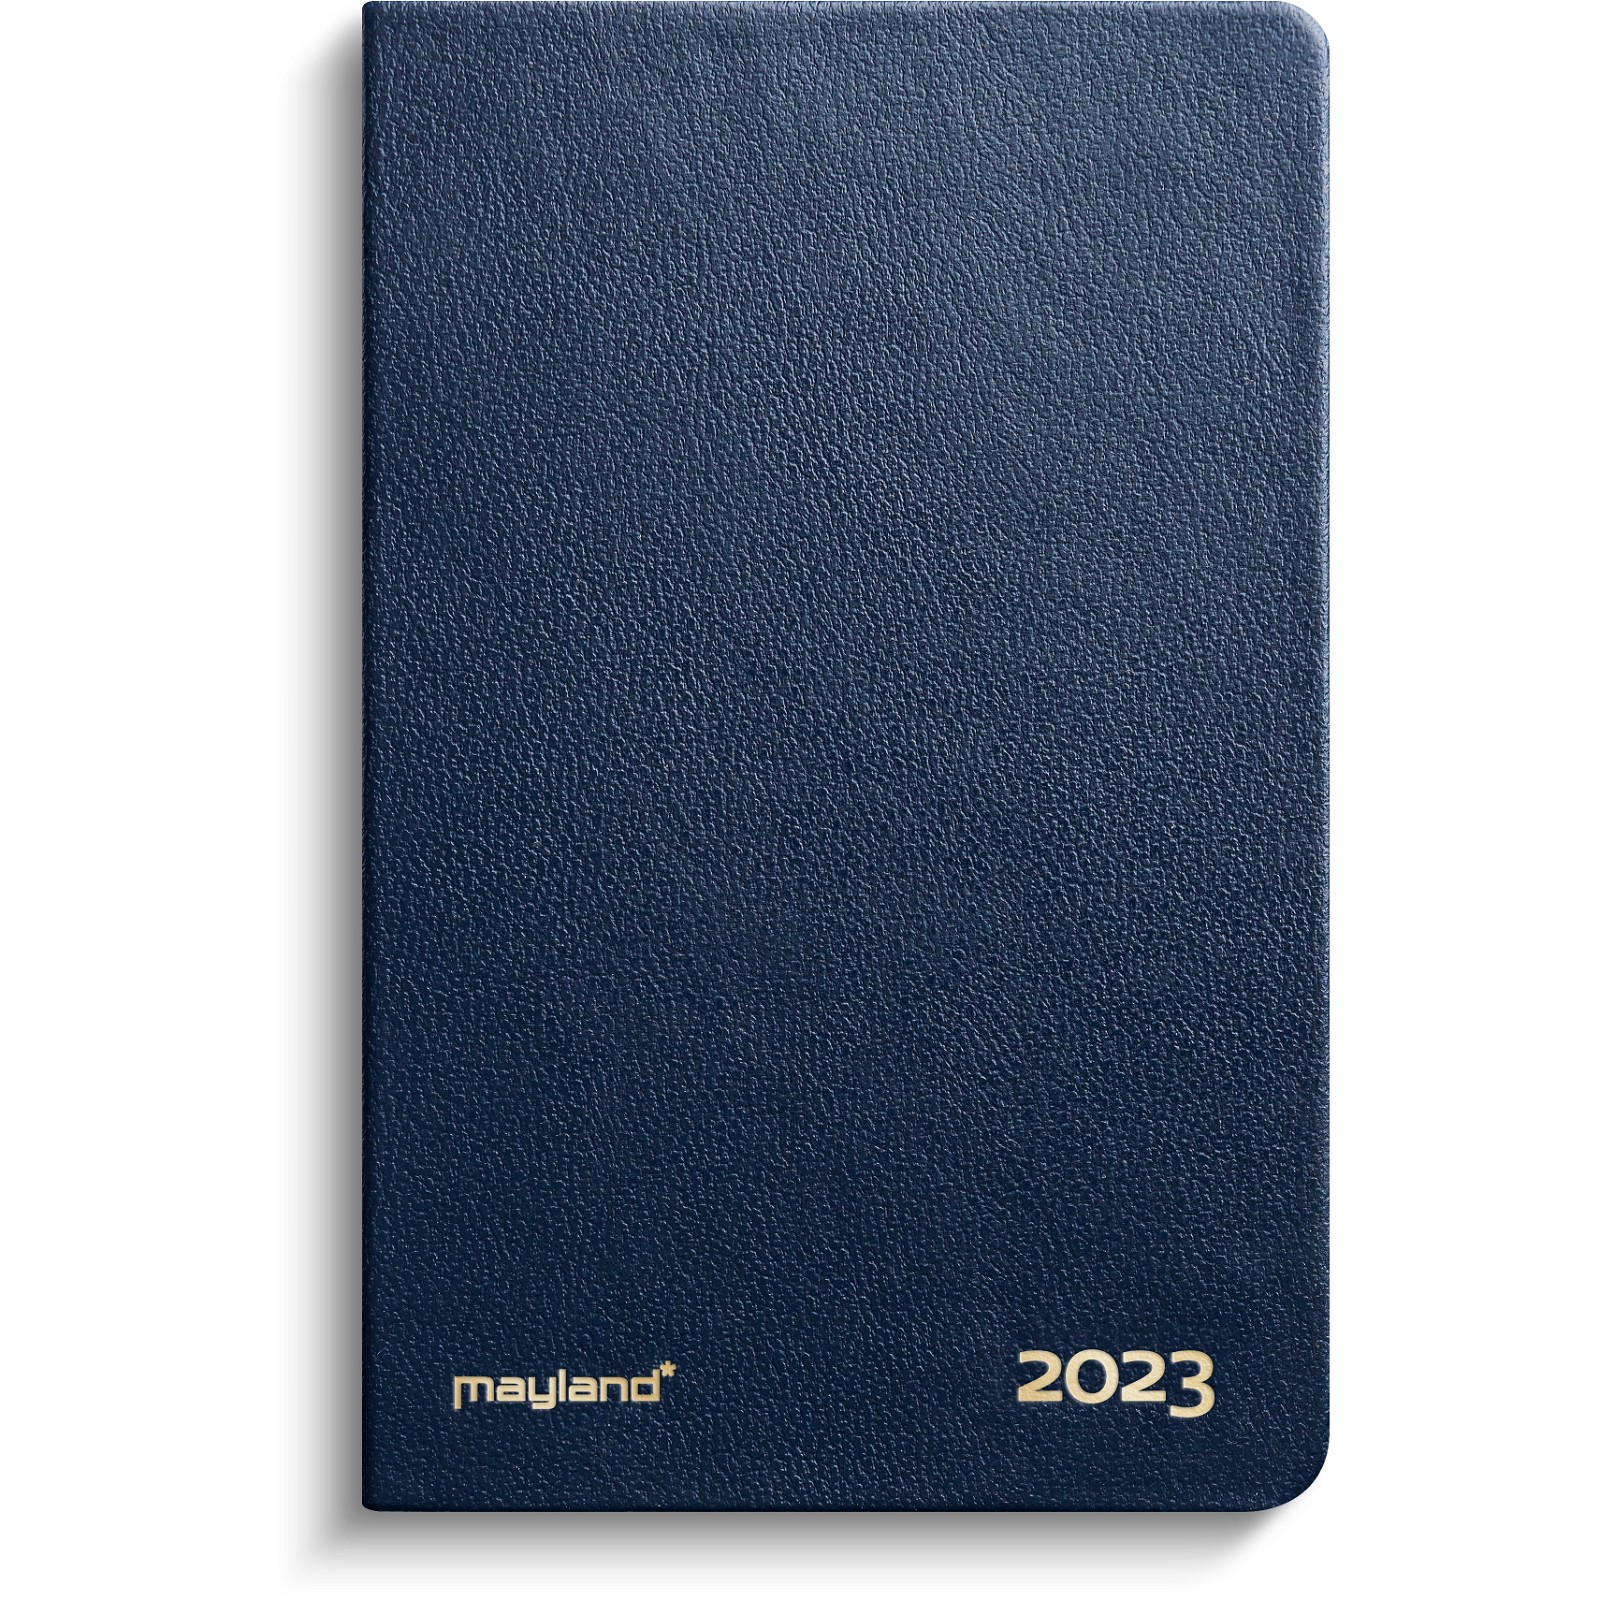 Mayland 2023 23162000 lommekalender 12x7,5x1,5cm blå